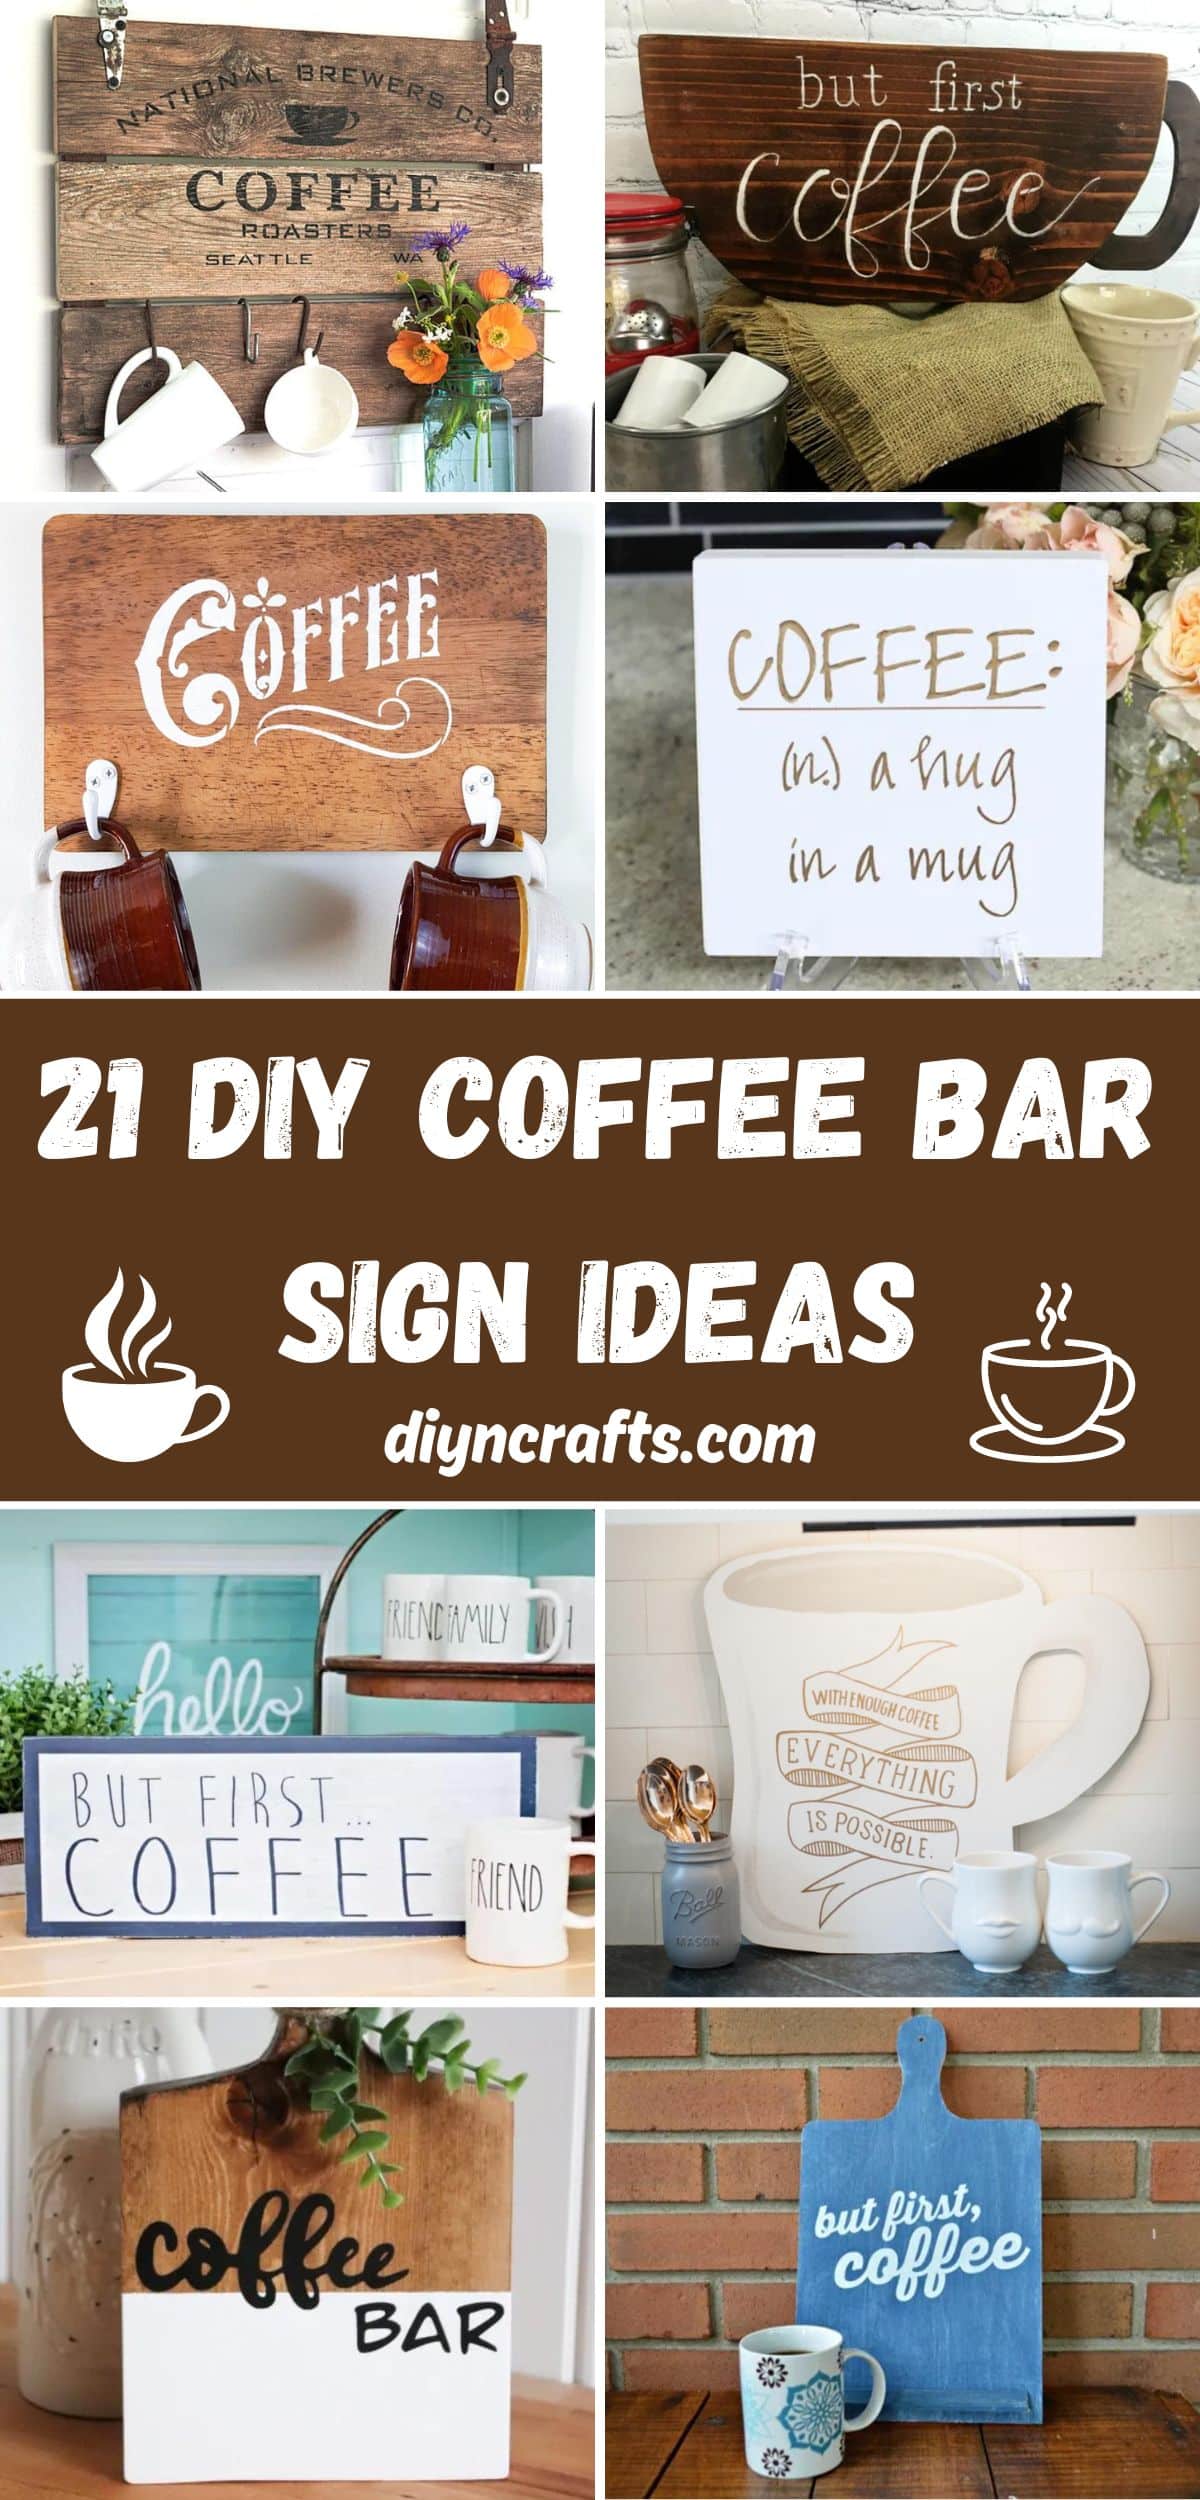 21 DIY Coffee Bar Sign Ideas collage.